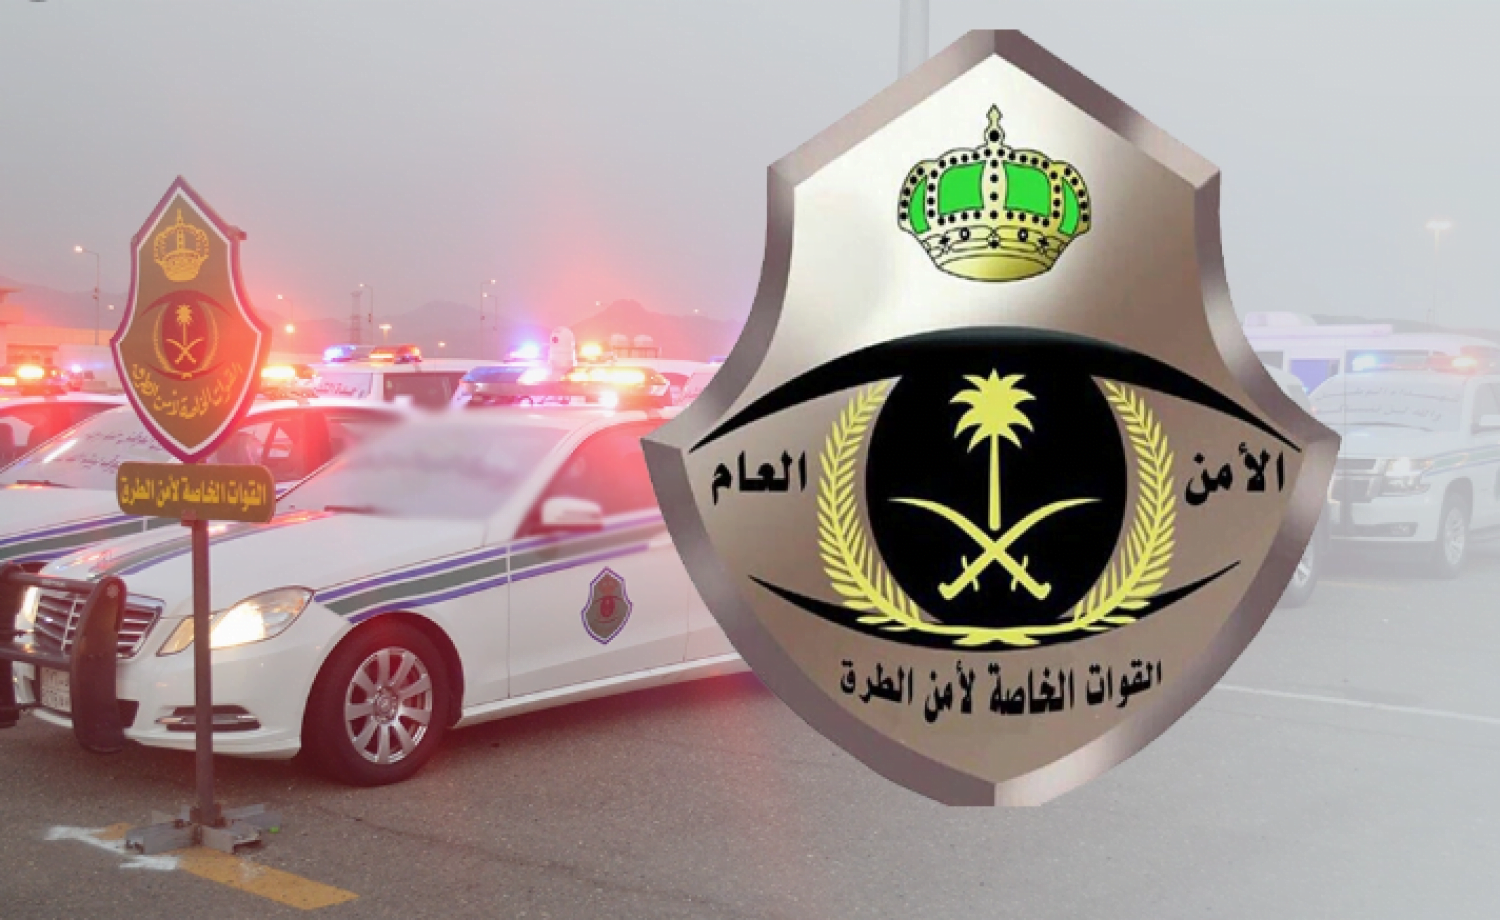 “أمن الطرق” يحذر قائدي المركبات: أمطار رعدية وتدنٍ في الرؤية على عدة محافظات بـ”الرياض”